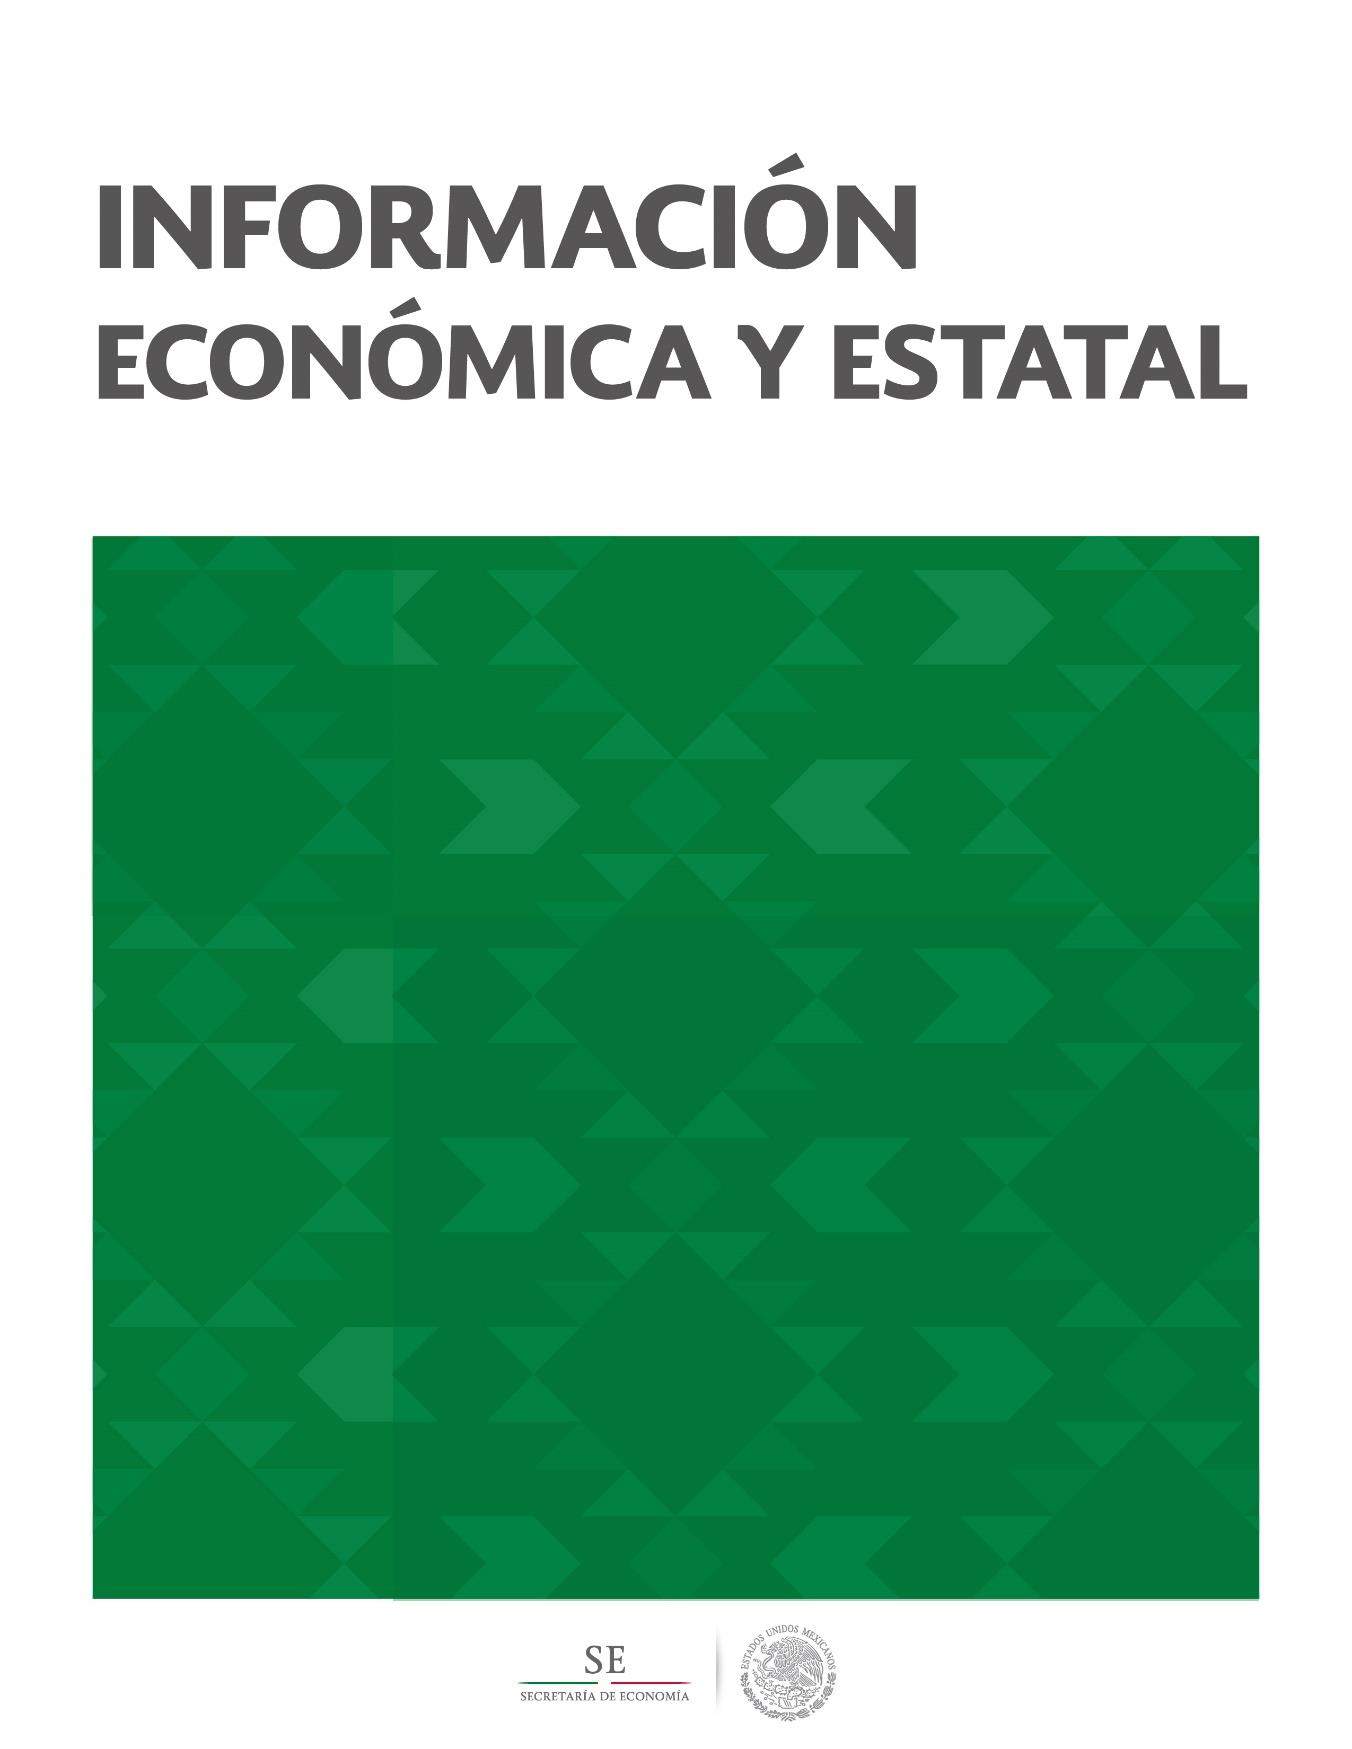 Yucatán Contenido Geografía y Población 2 Actividad Económica 5 Sector